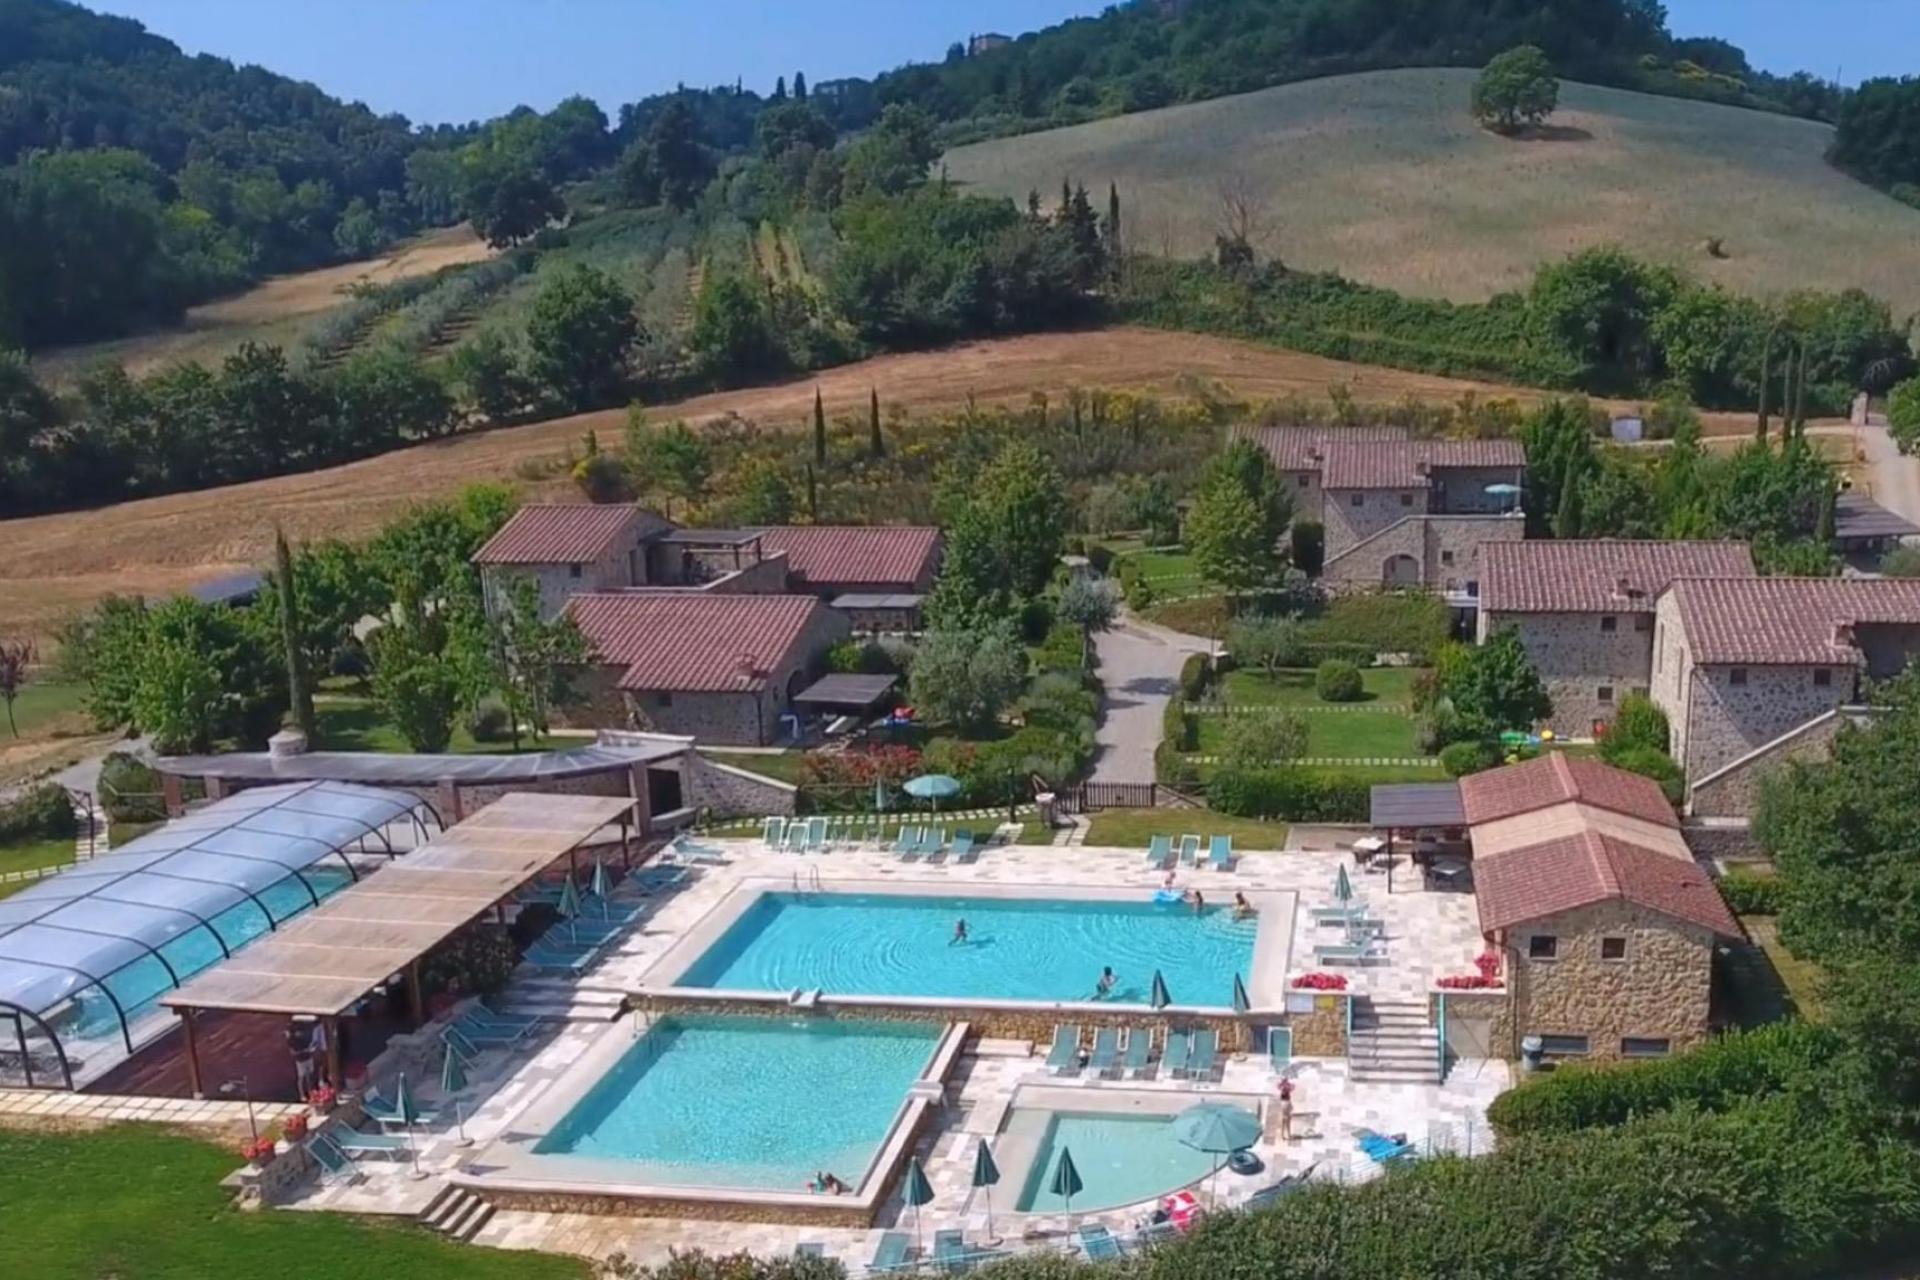 Bellissimo country resort nel centro della Toscana